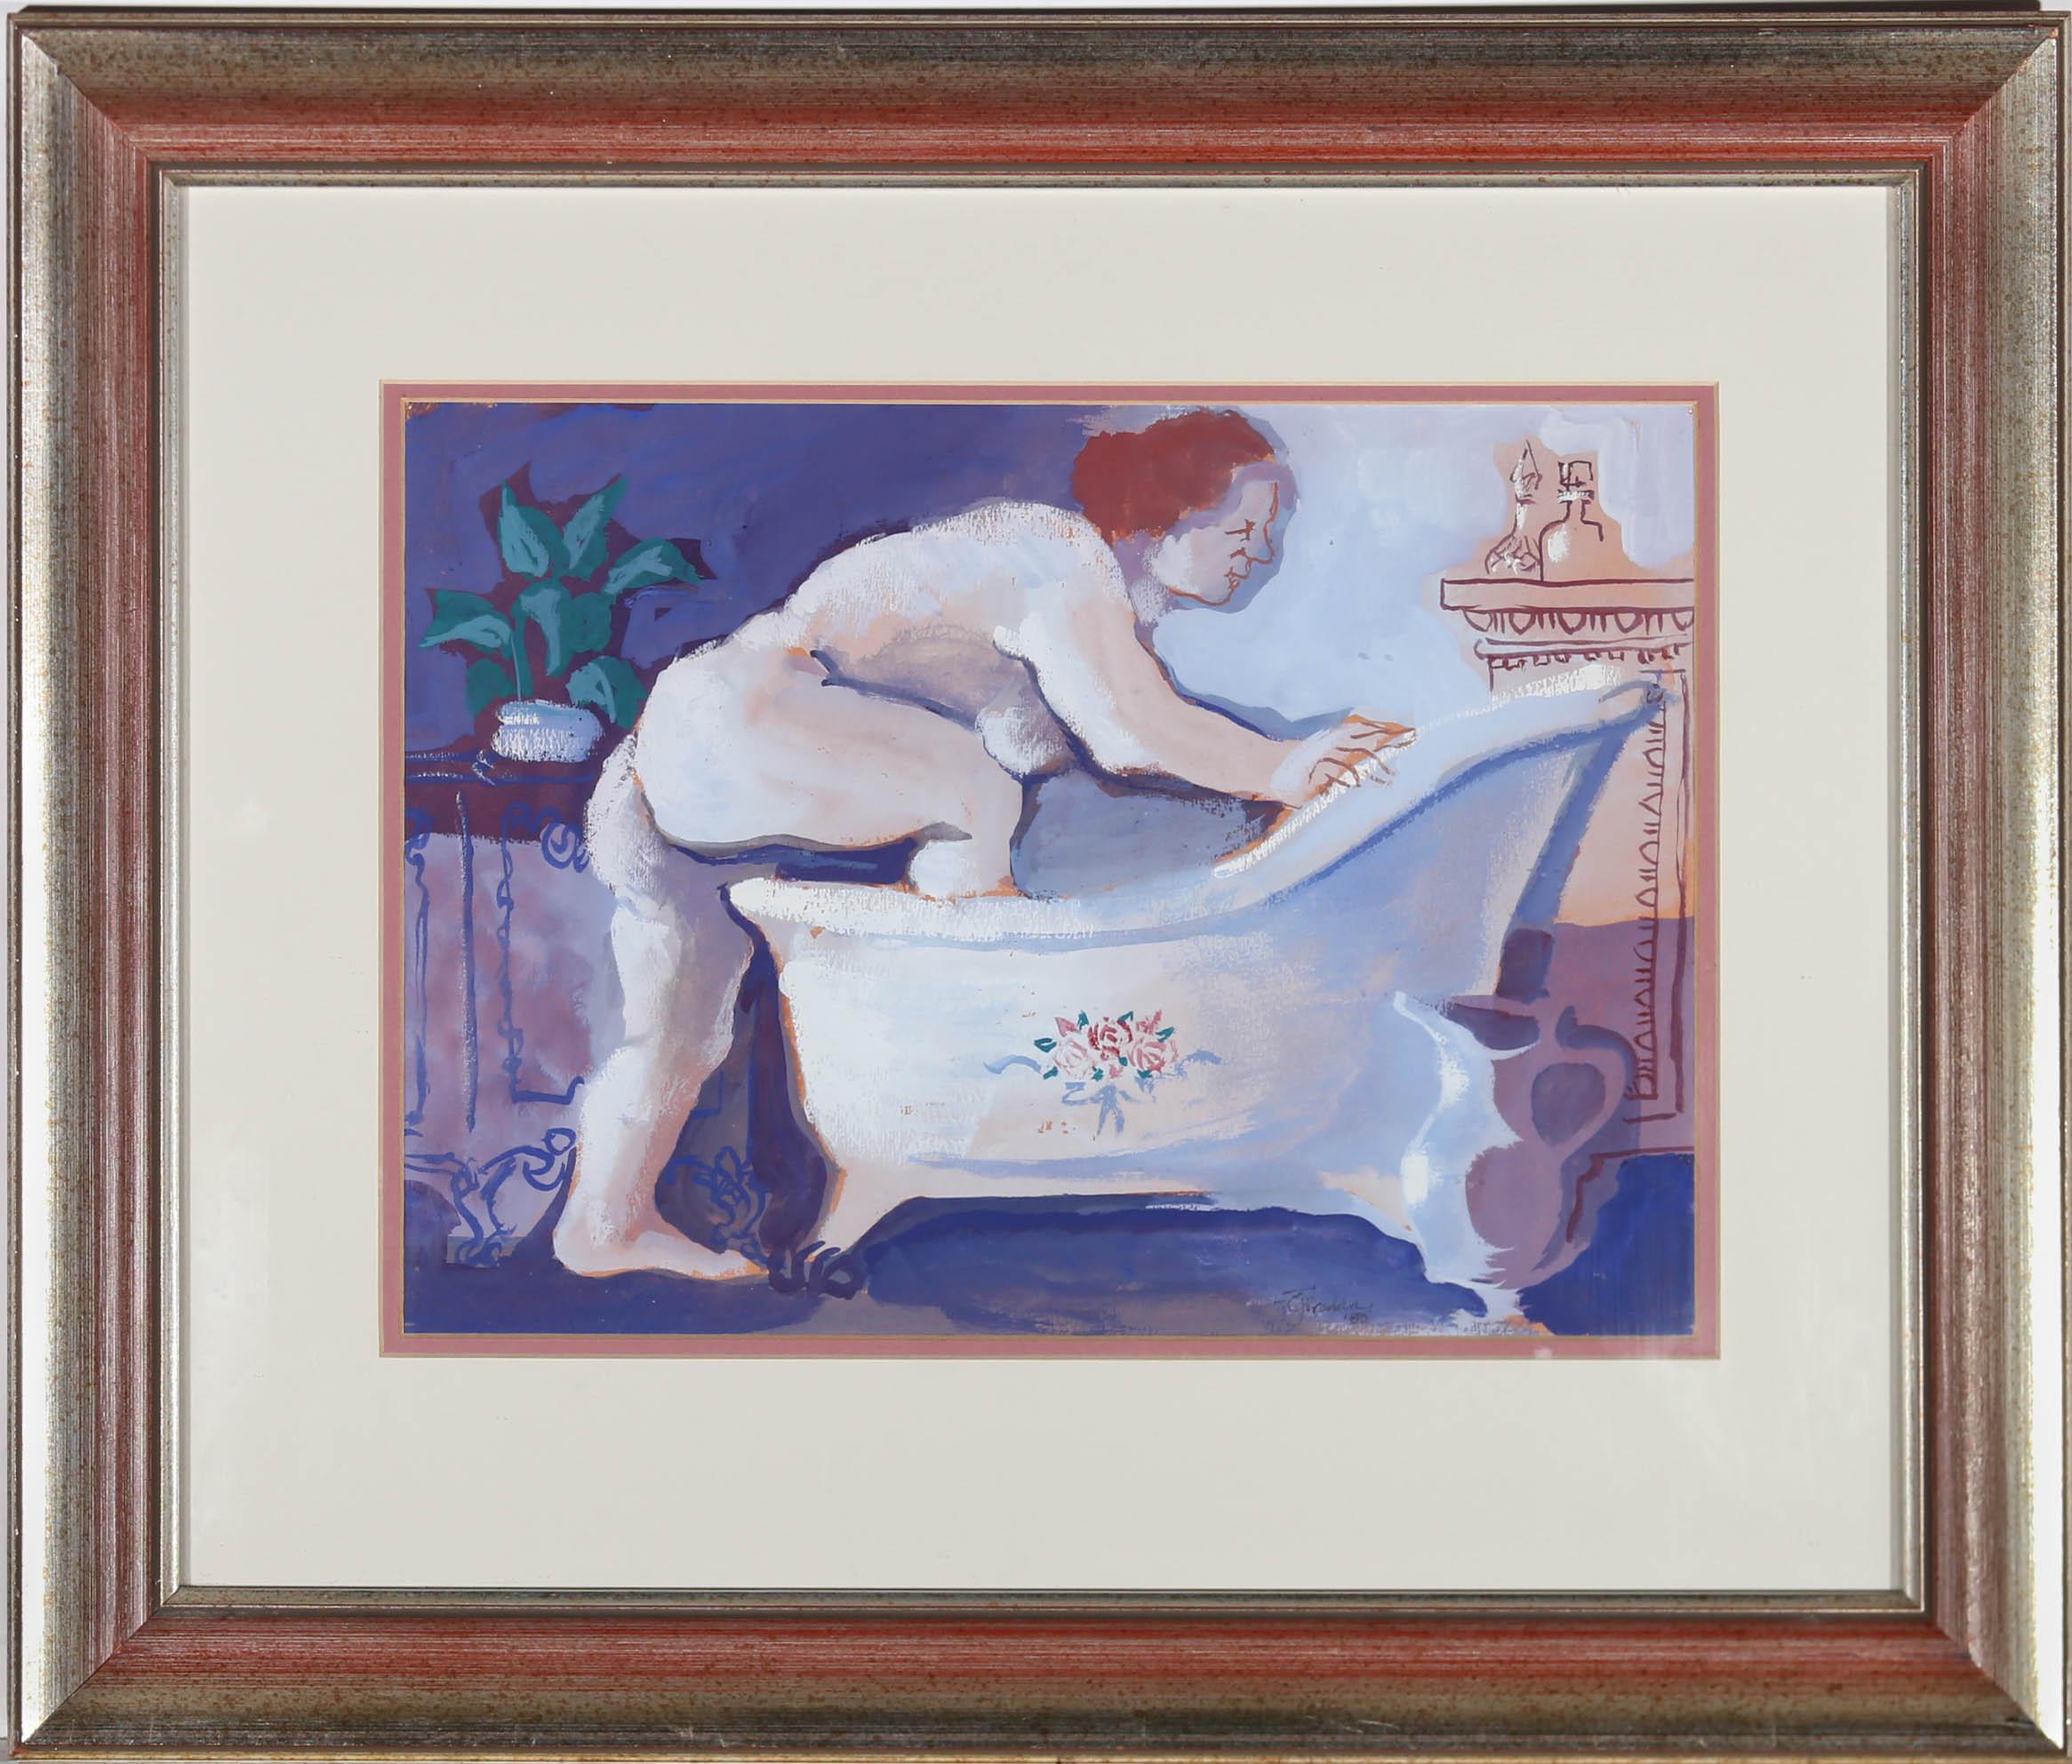 Une étude accrocheuse de Cyril Fradan, représentant une figure nue grimpant dans une belle baignoire sur pieds. La scène a été peinte dans toutes les nuances de violet pour représenter la lumière du soir, avec des nuages de vapeur s'élevant de la